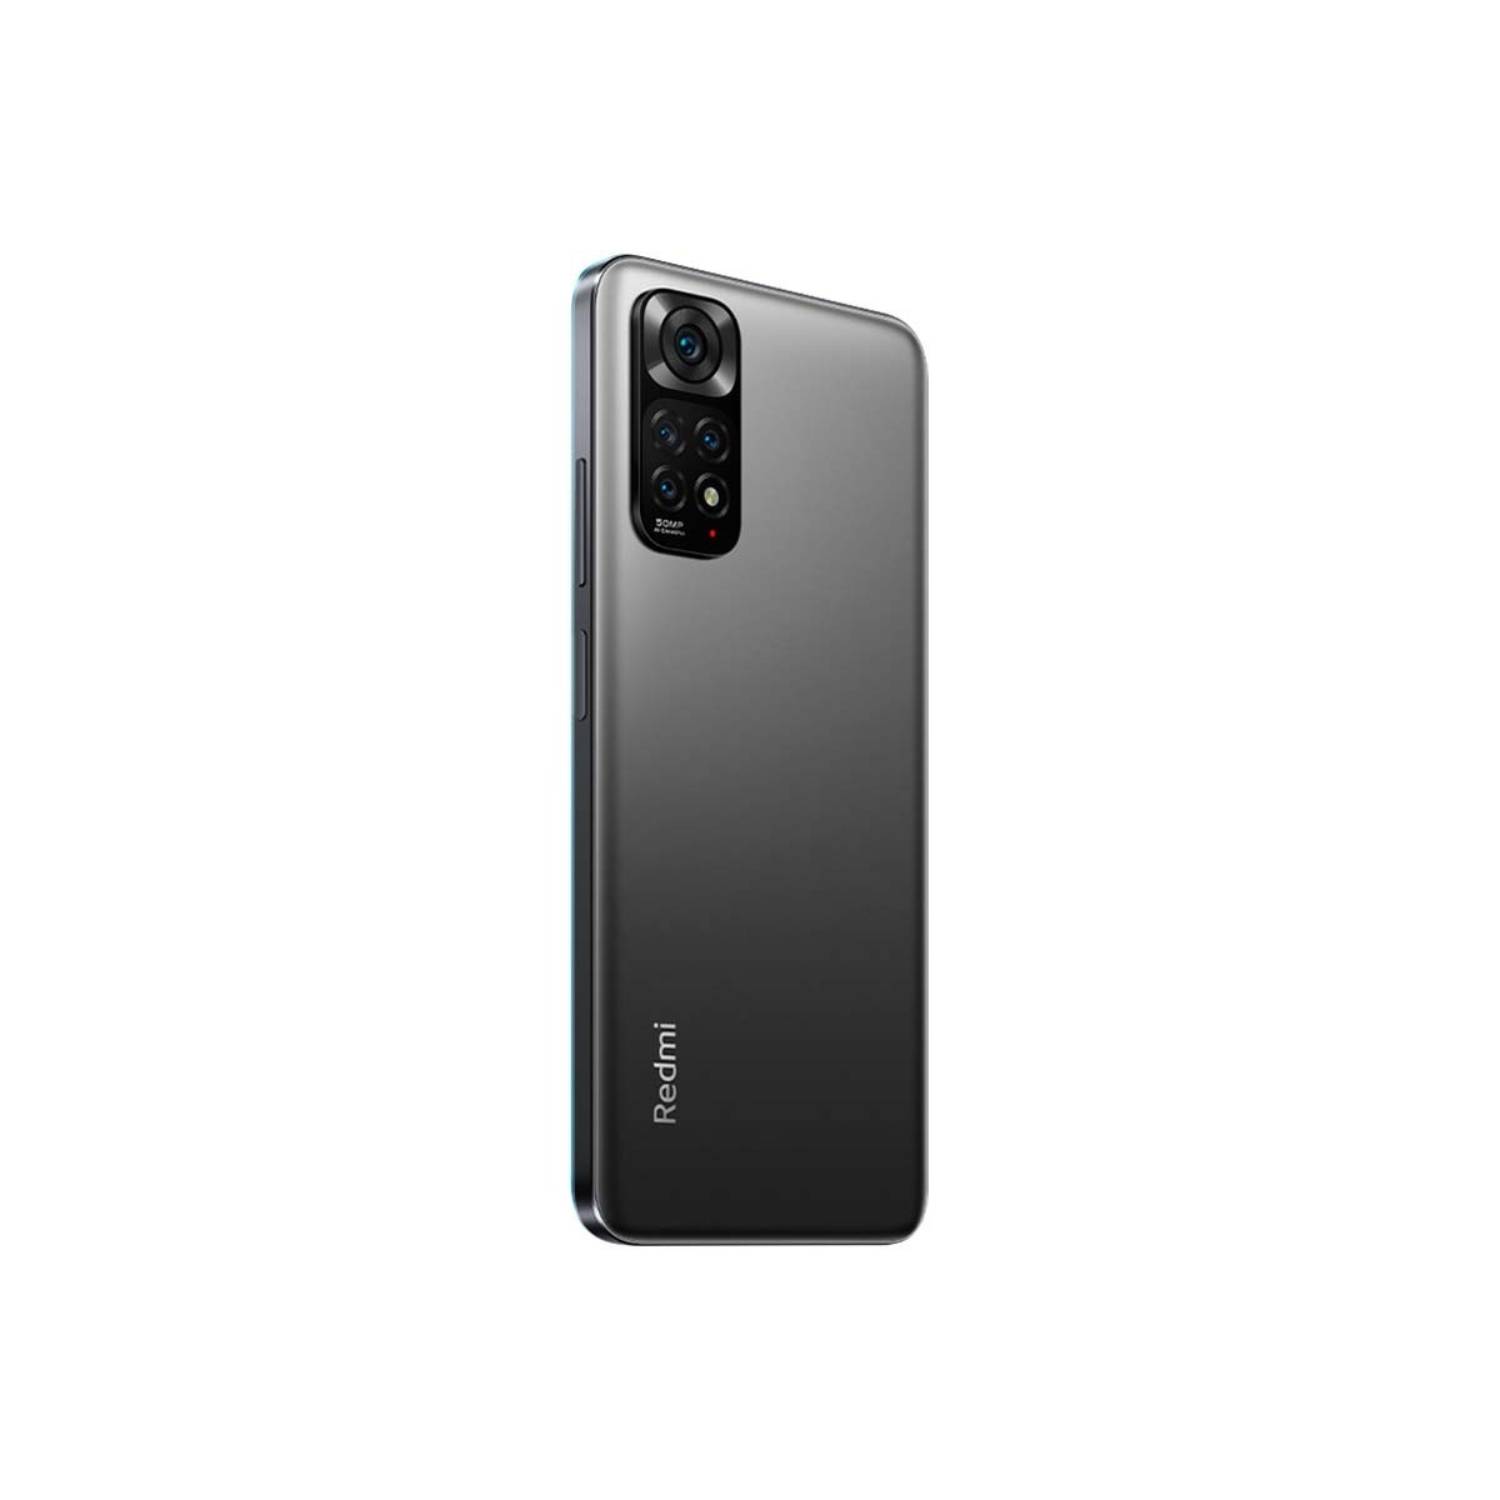 Xiaomi Redmi Note 11S 5G: conexión 5G y una cámara increíble, ¿qué más?